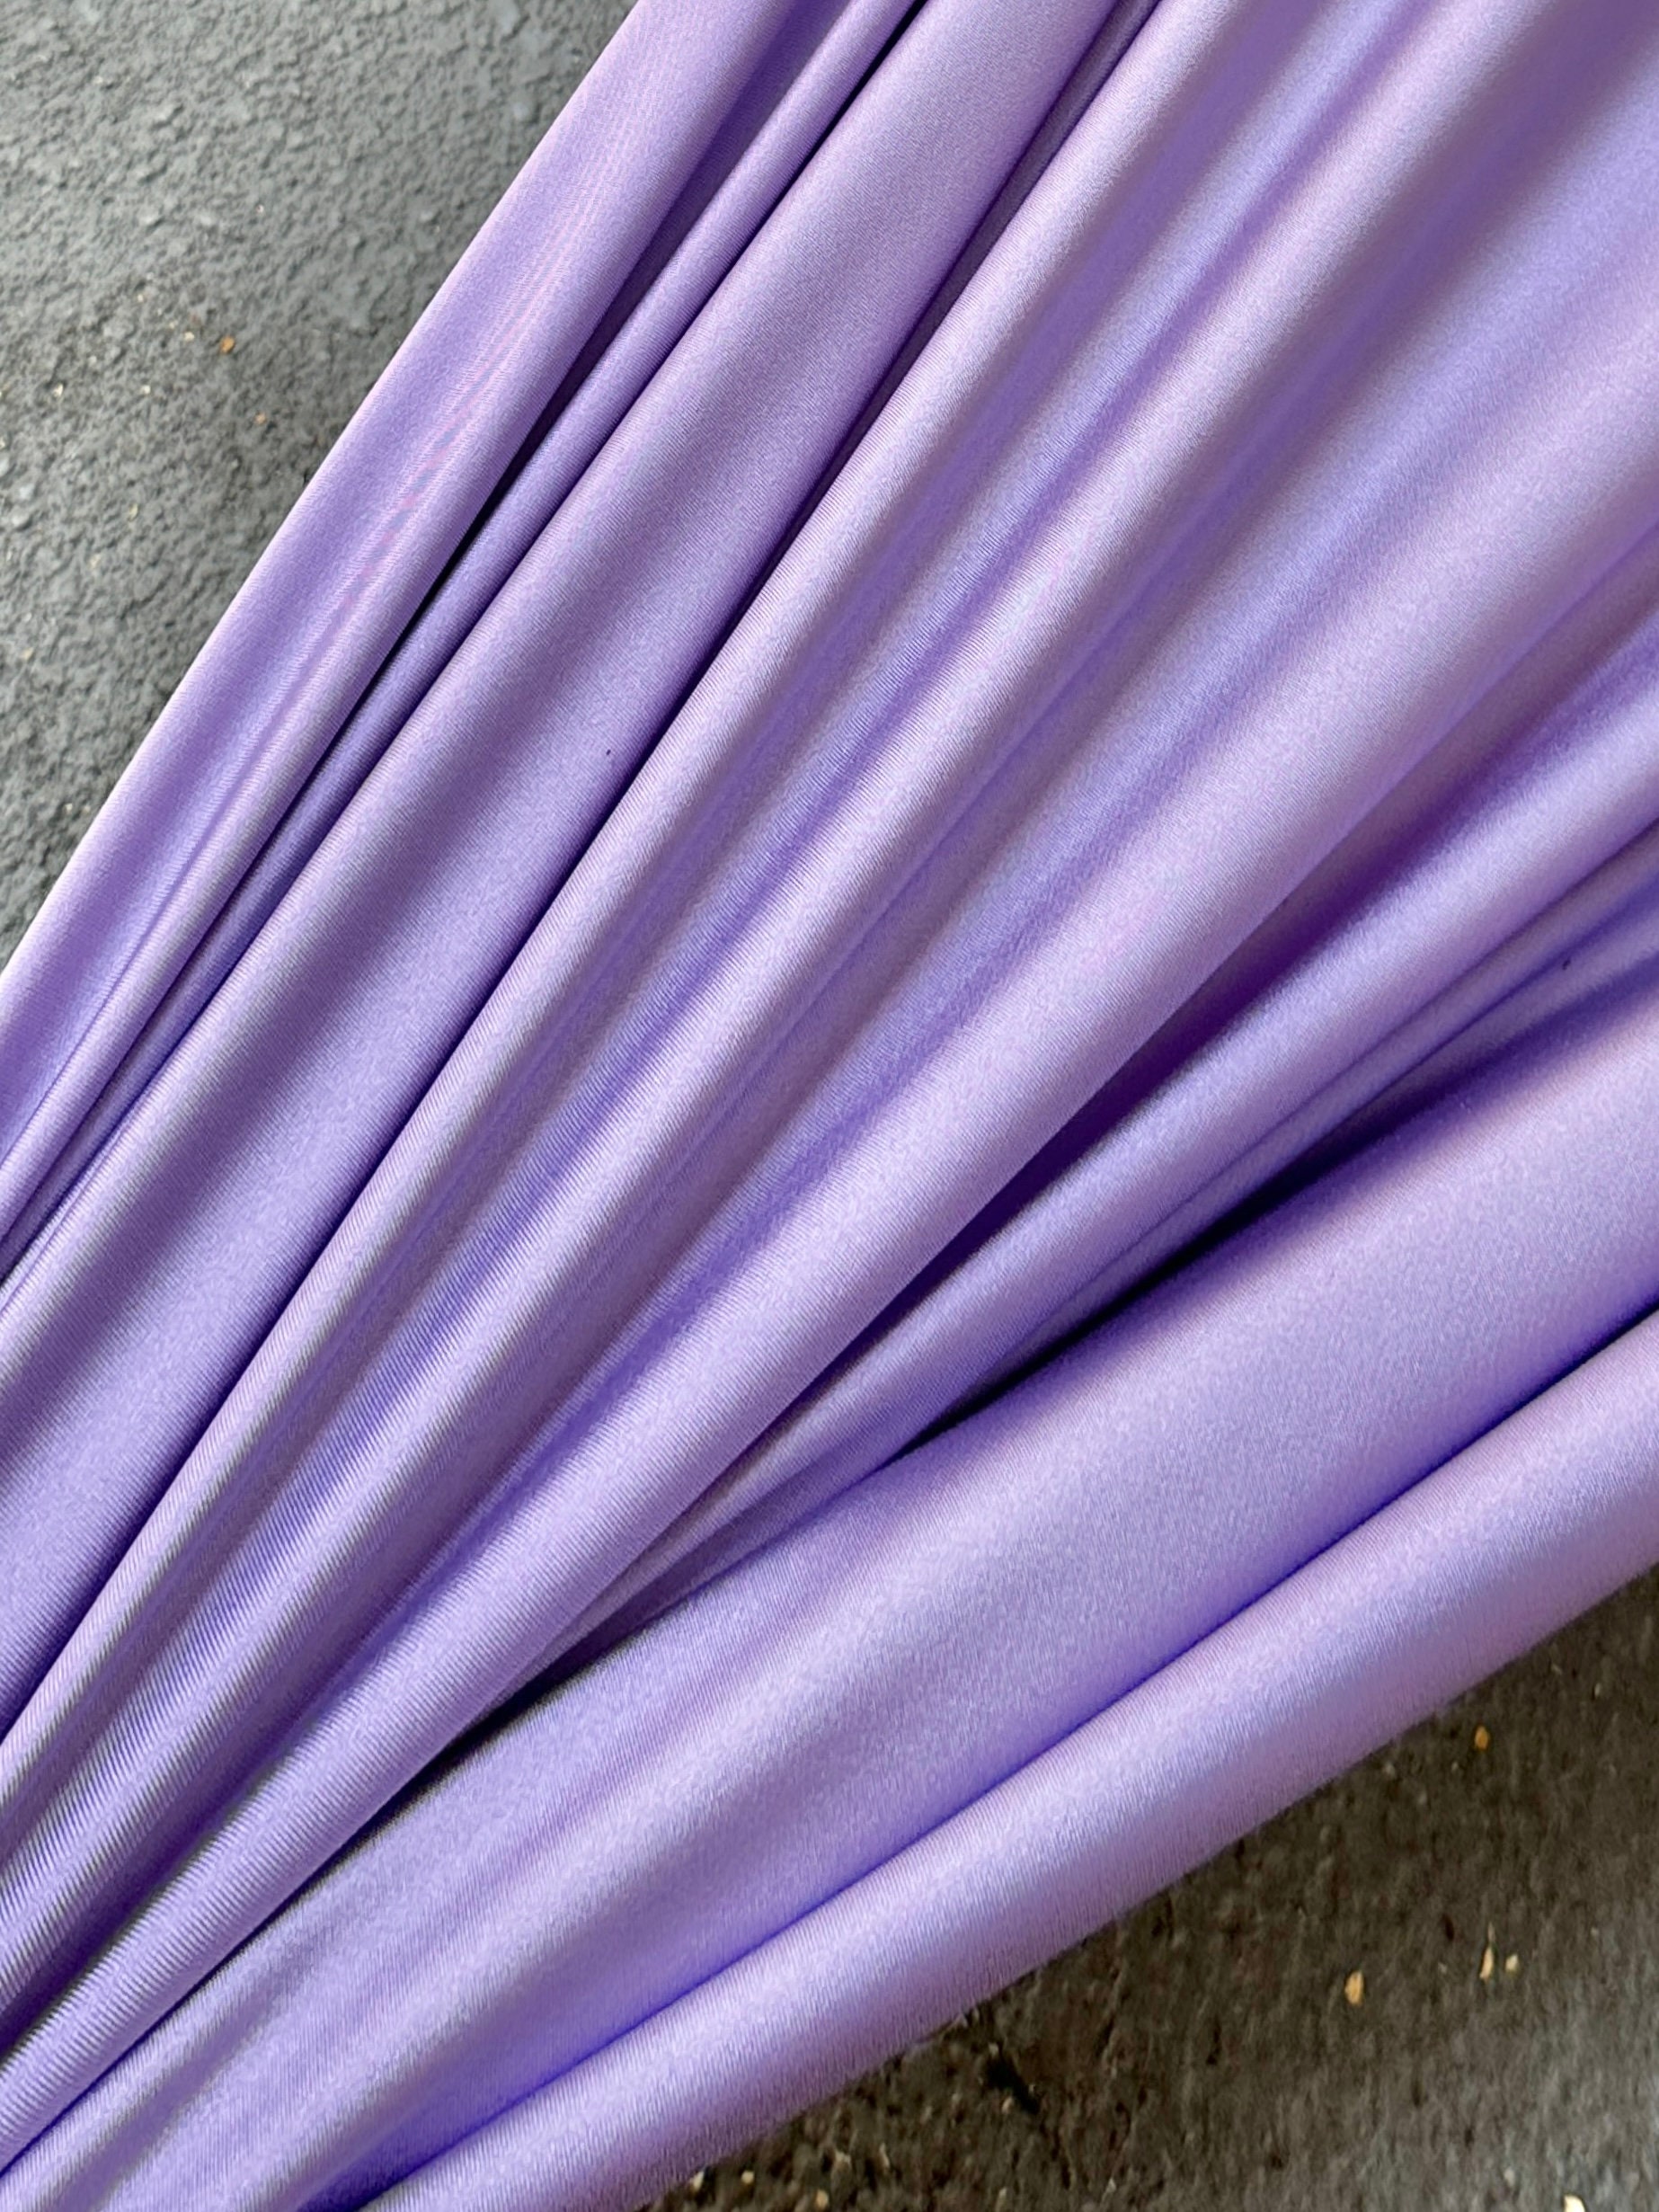 Lavender Super Stretch Nylon Spandex, 4 Way Stretch Lilac Yoga